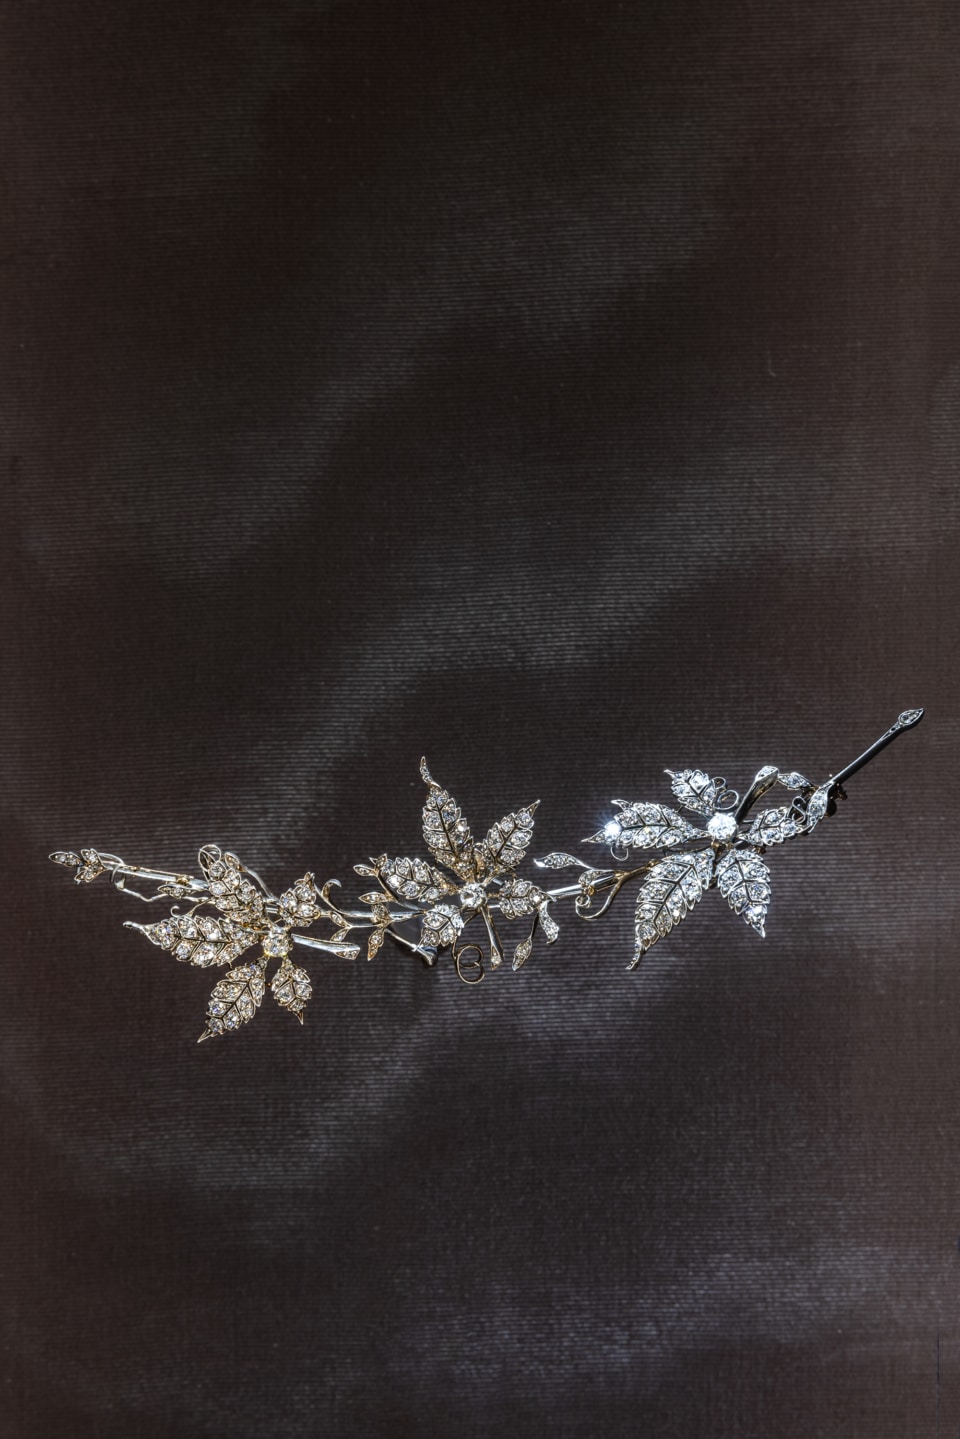 1860年に制作された葡萄の花をモチーフにしたマルチウェアジュエリー。当時ハイジュエリーではあまり用いられることのなかったこの植物を題材に選んだことは、創業者フレデリック・ブシュロンがあらゆる形態の自然に対する愛着を持っていたことを証明するもの。